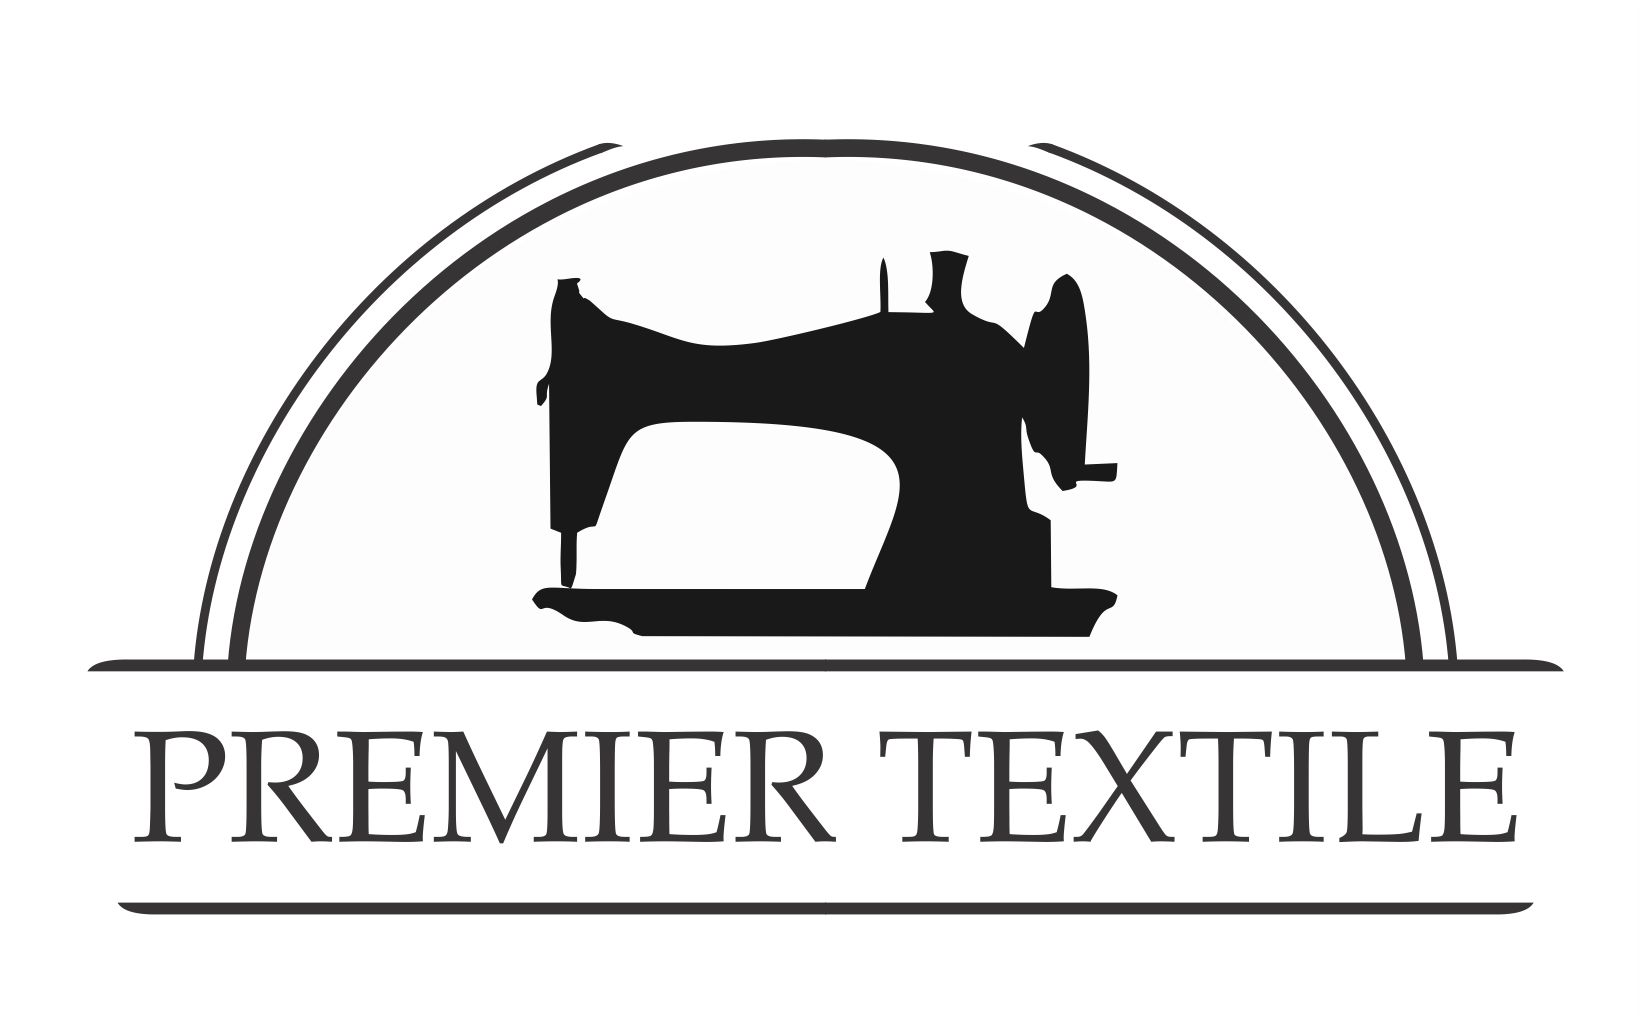 Premier Textile — спецодежда и трикотаж